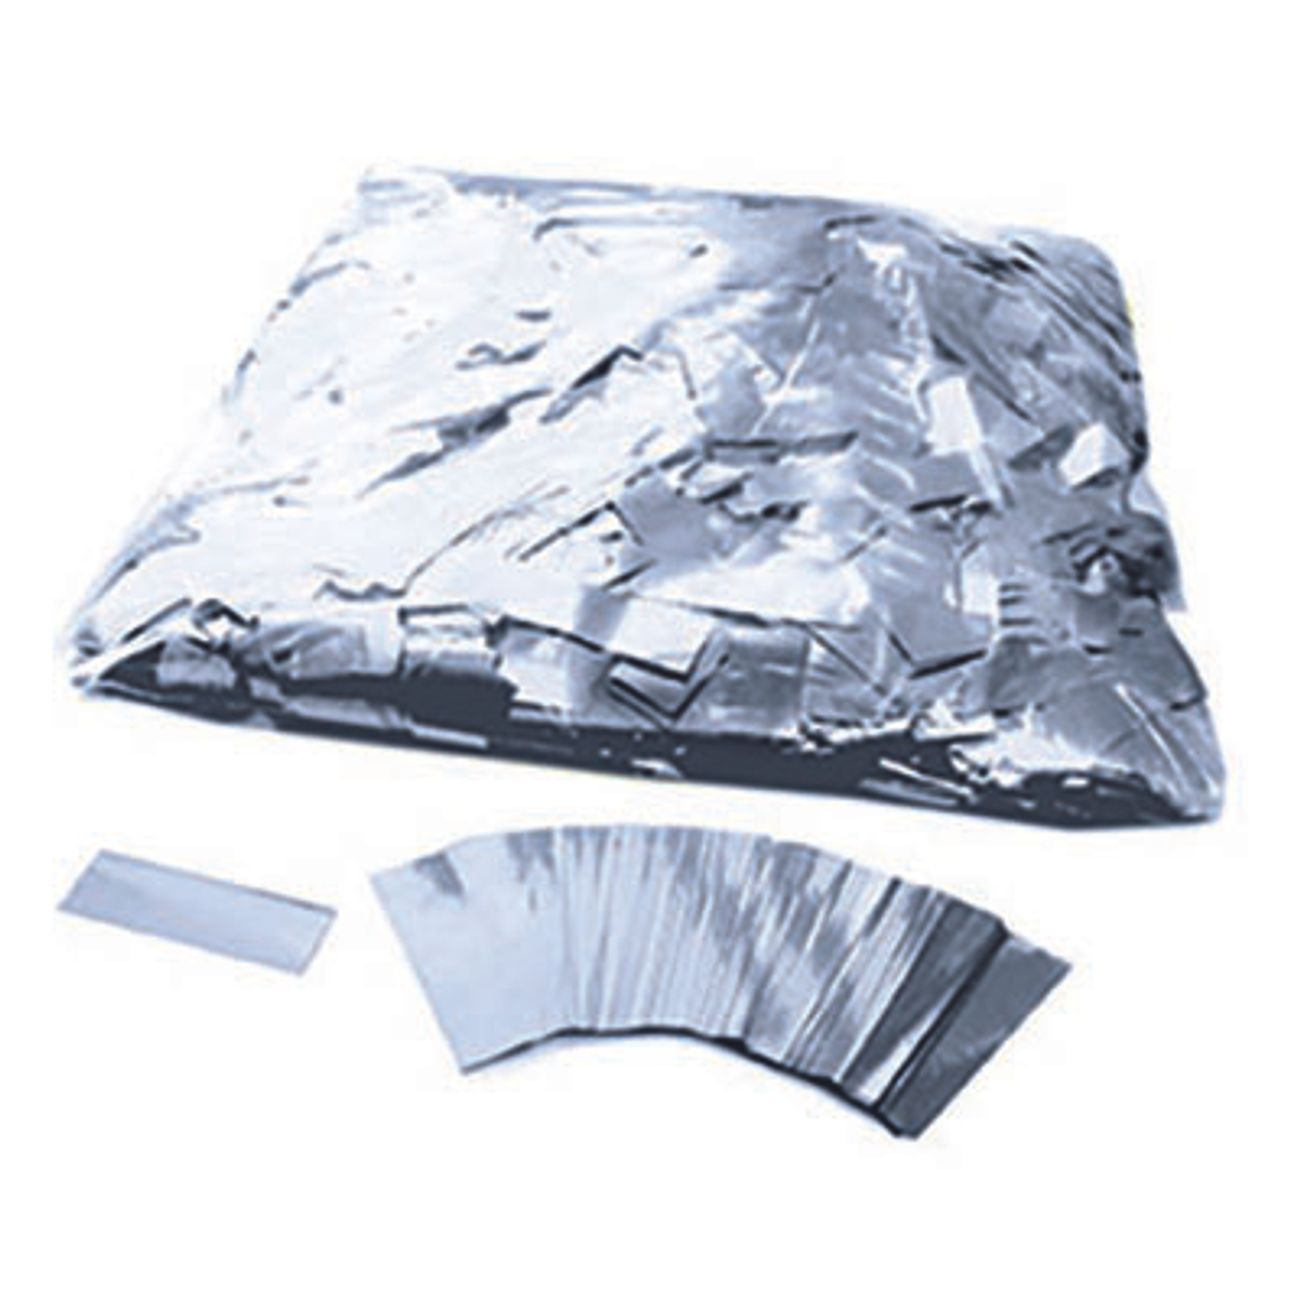 konfetti-metallic-silver-1